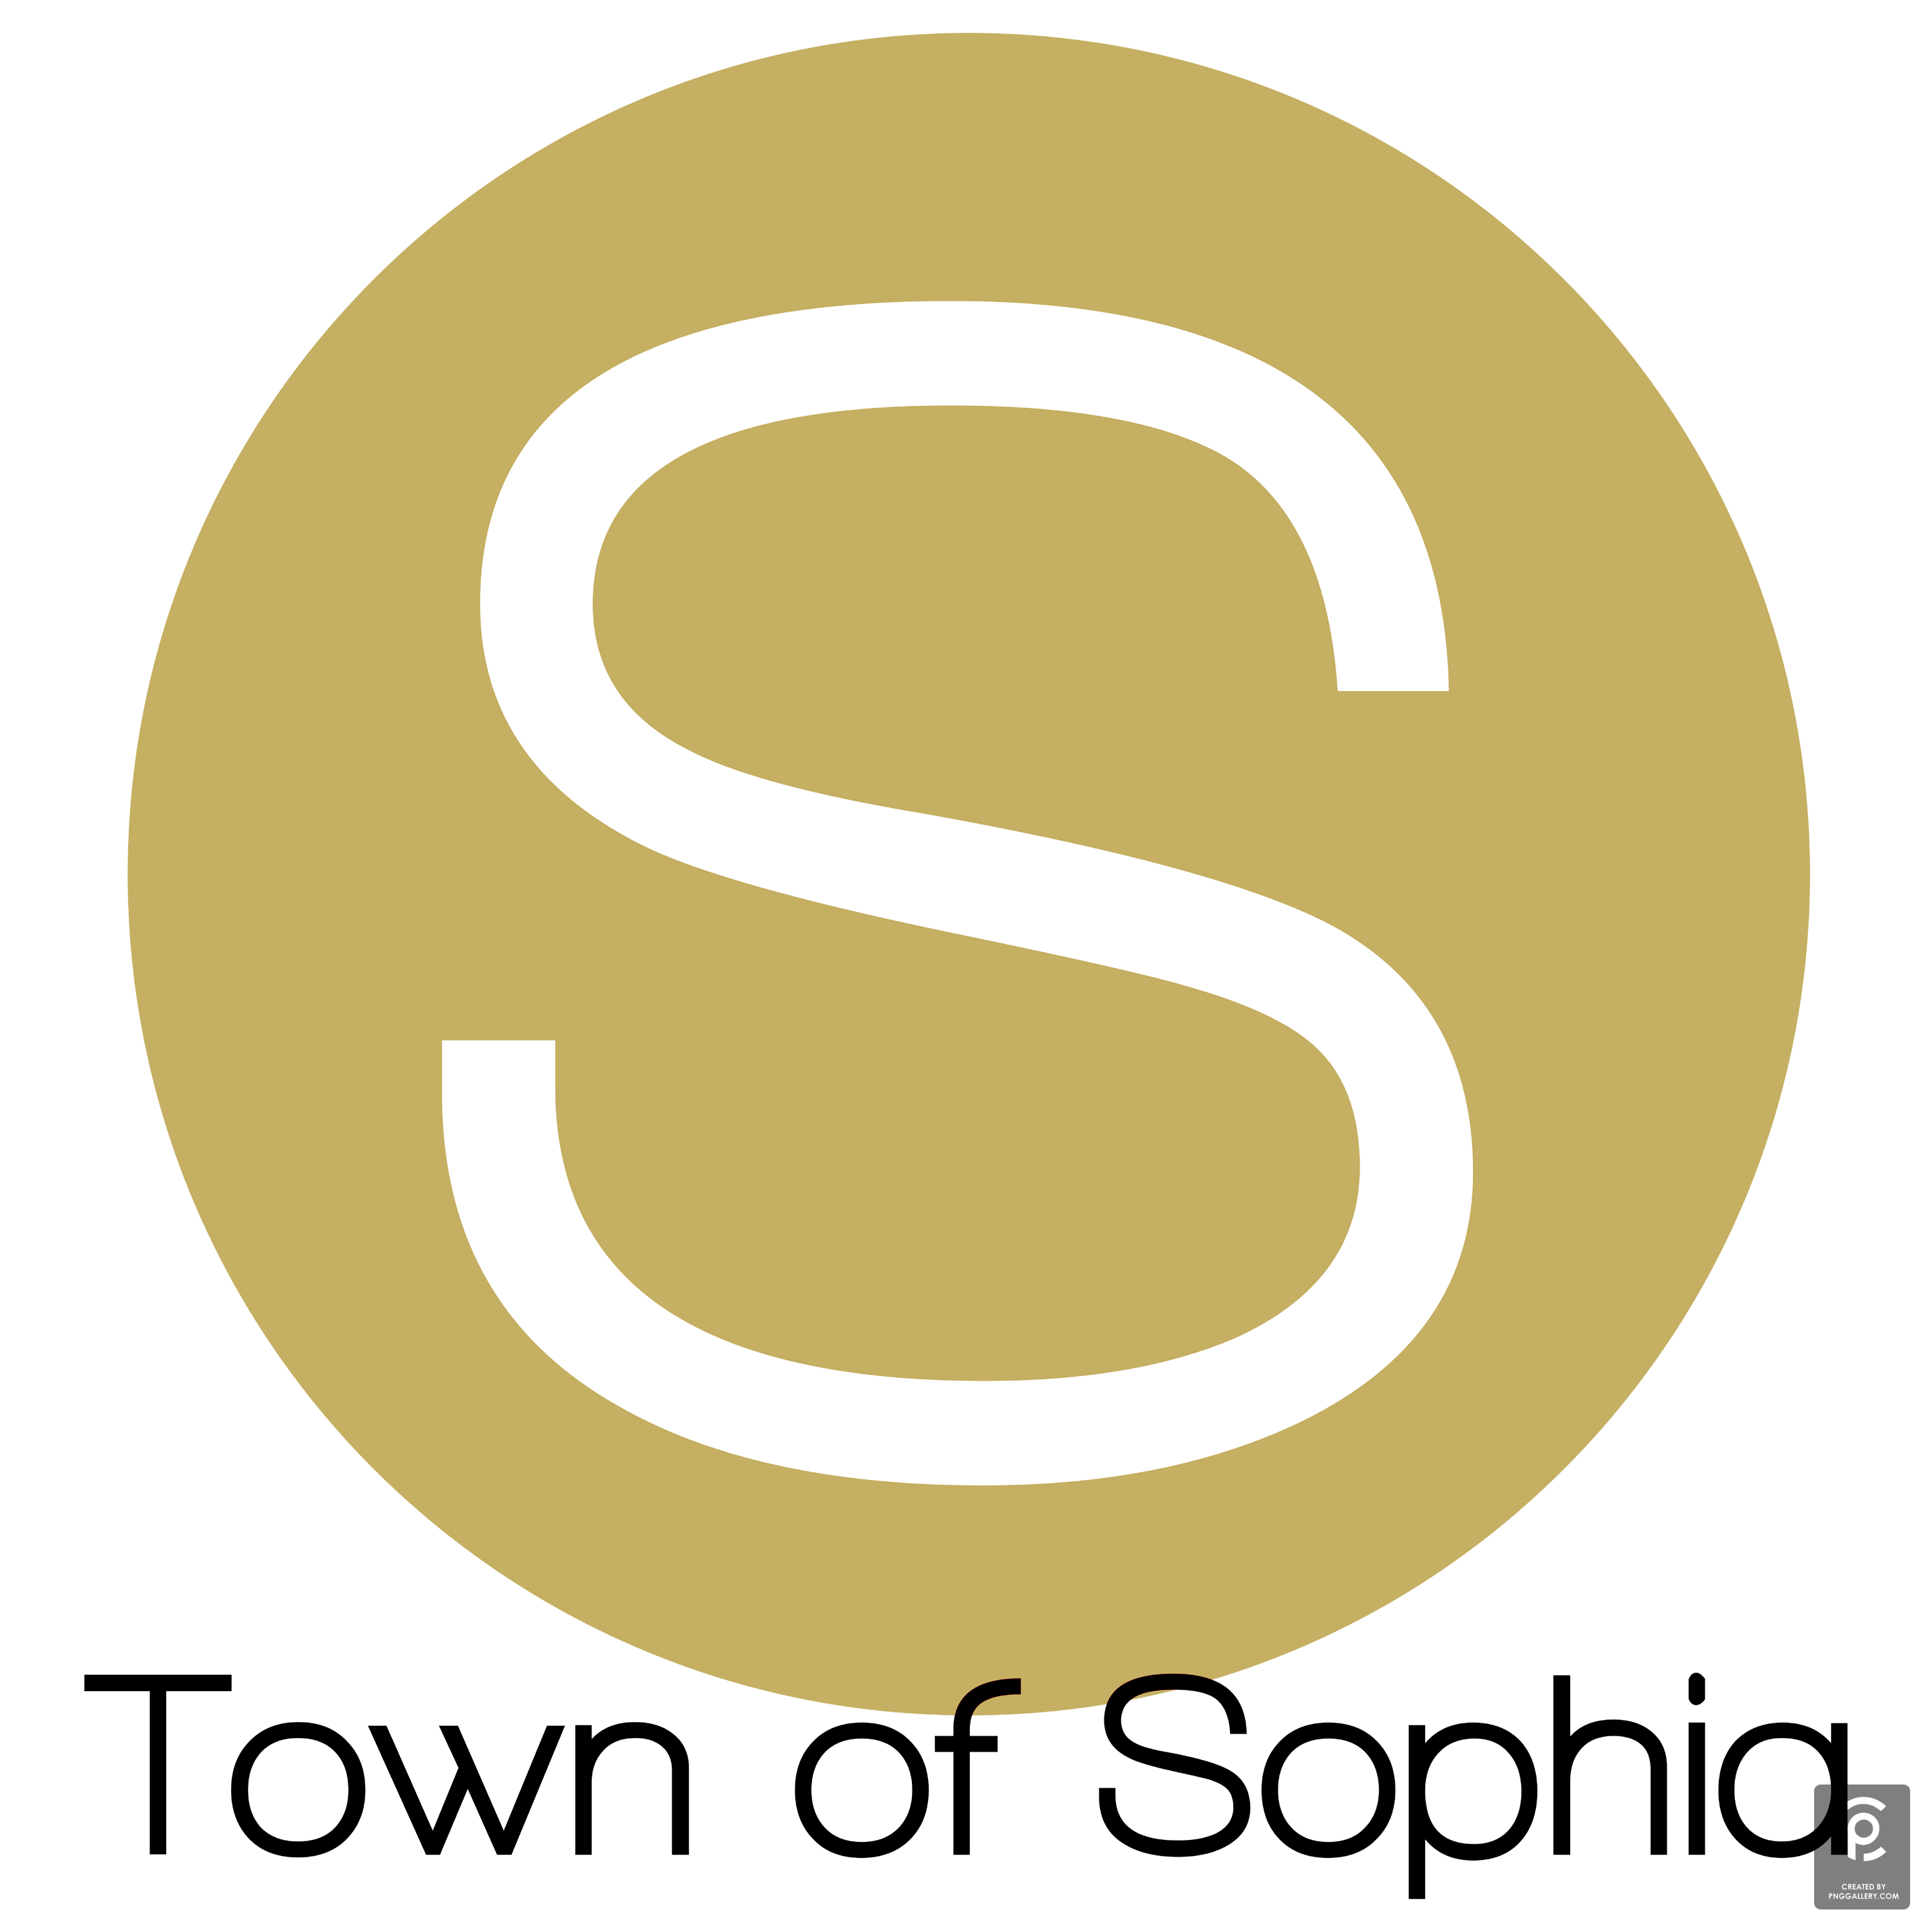 Sophia West Virginia Logo Transparent Clipart